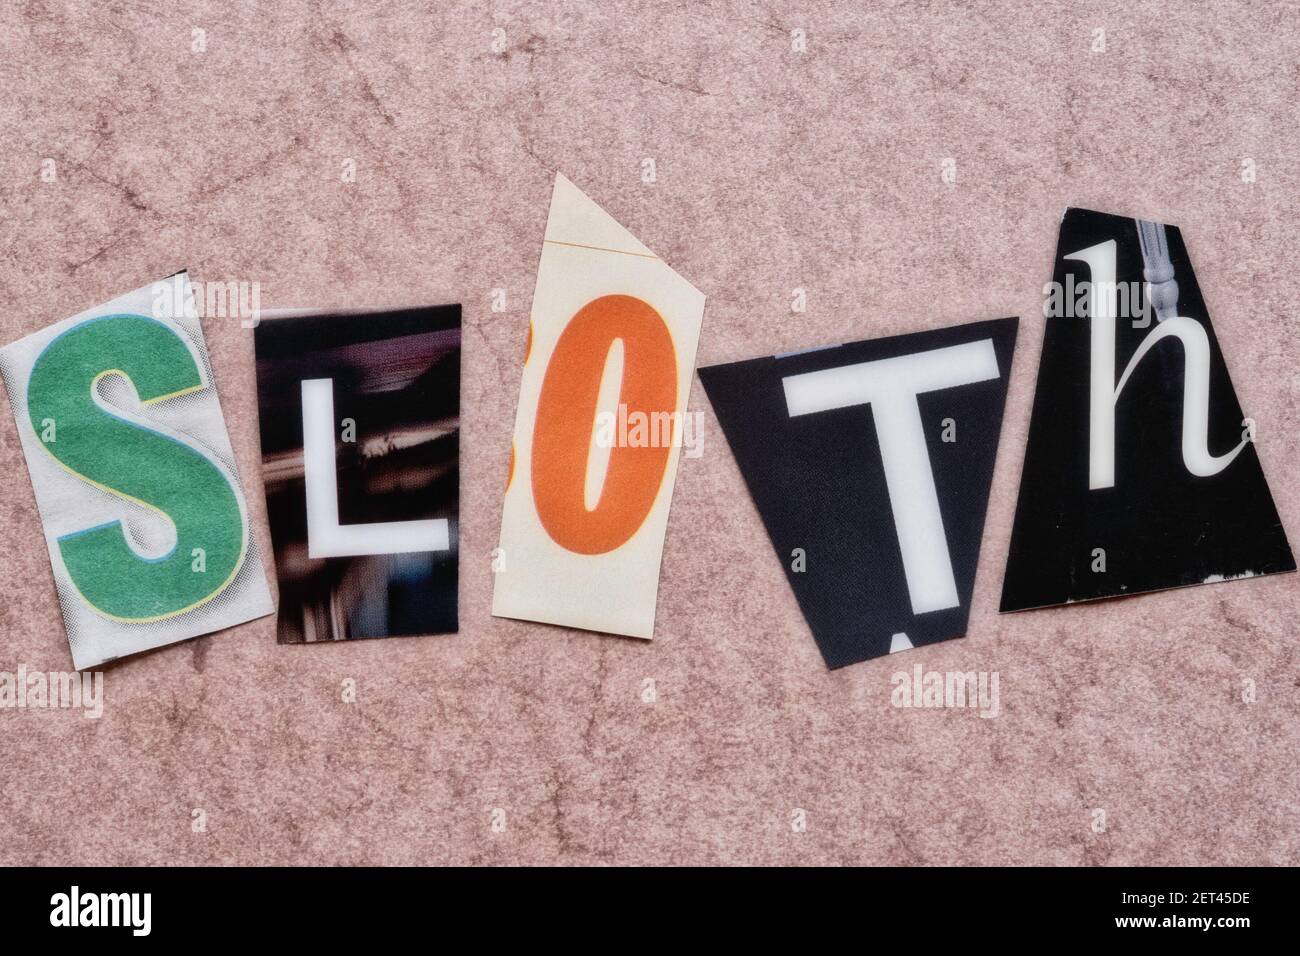 Das Wort "Sloth" mit ausgeschnittenen Papierbuchstaben in der Lösegeld Note Effekt Typografie, USA Stockfoto